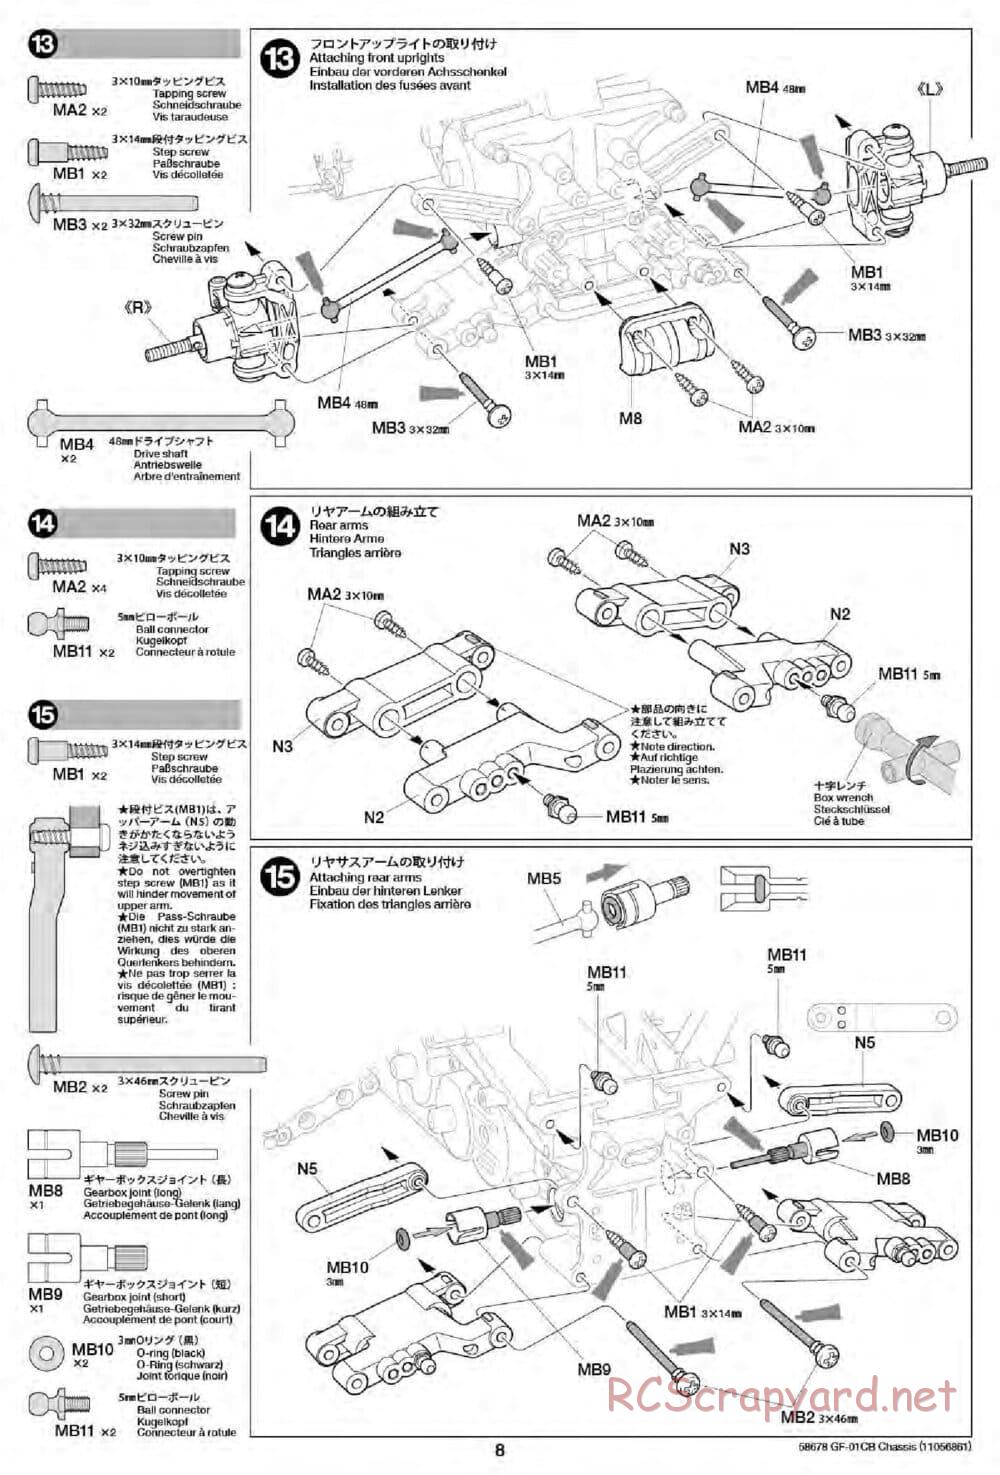 Tamiya - GF-01CB Chassis - Manual - Page 10